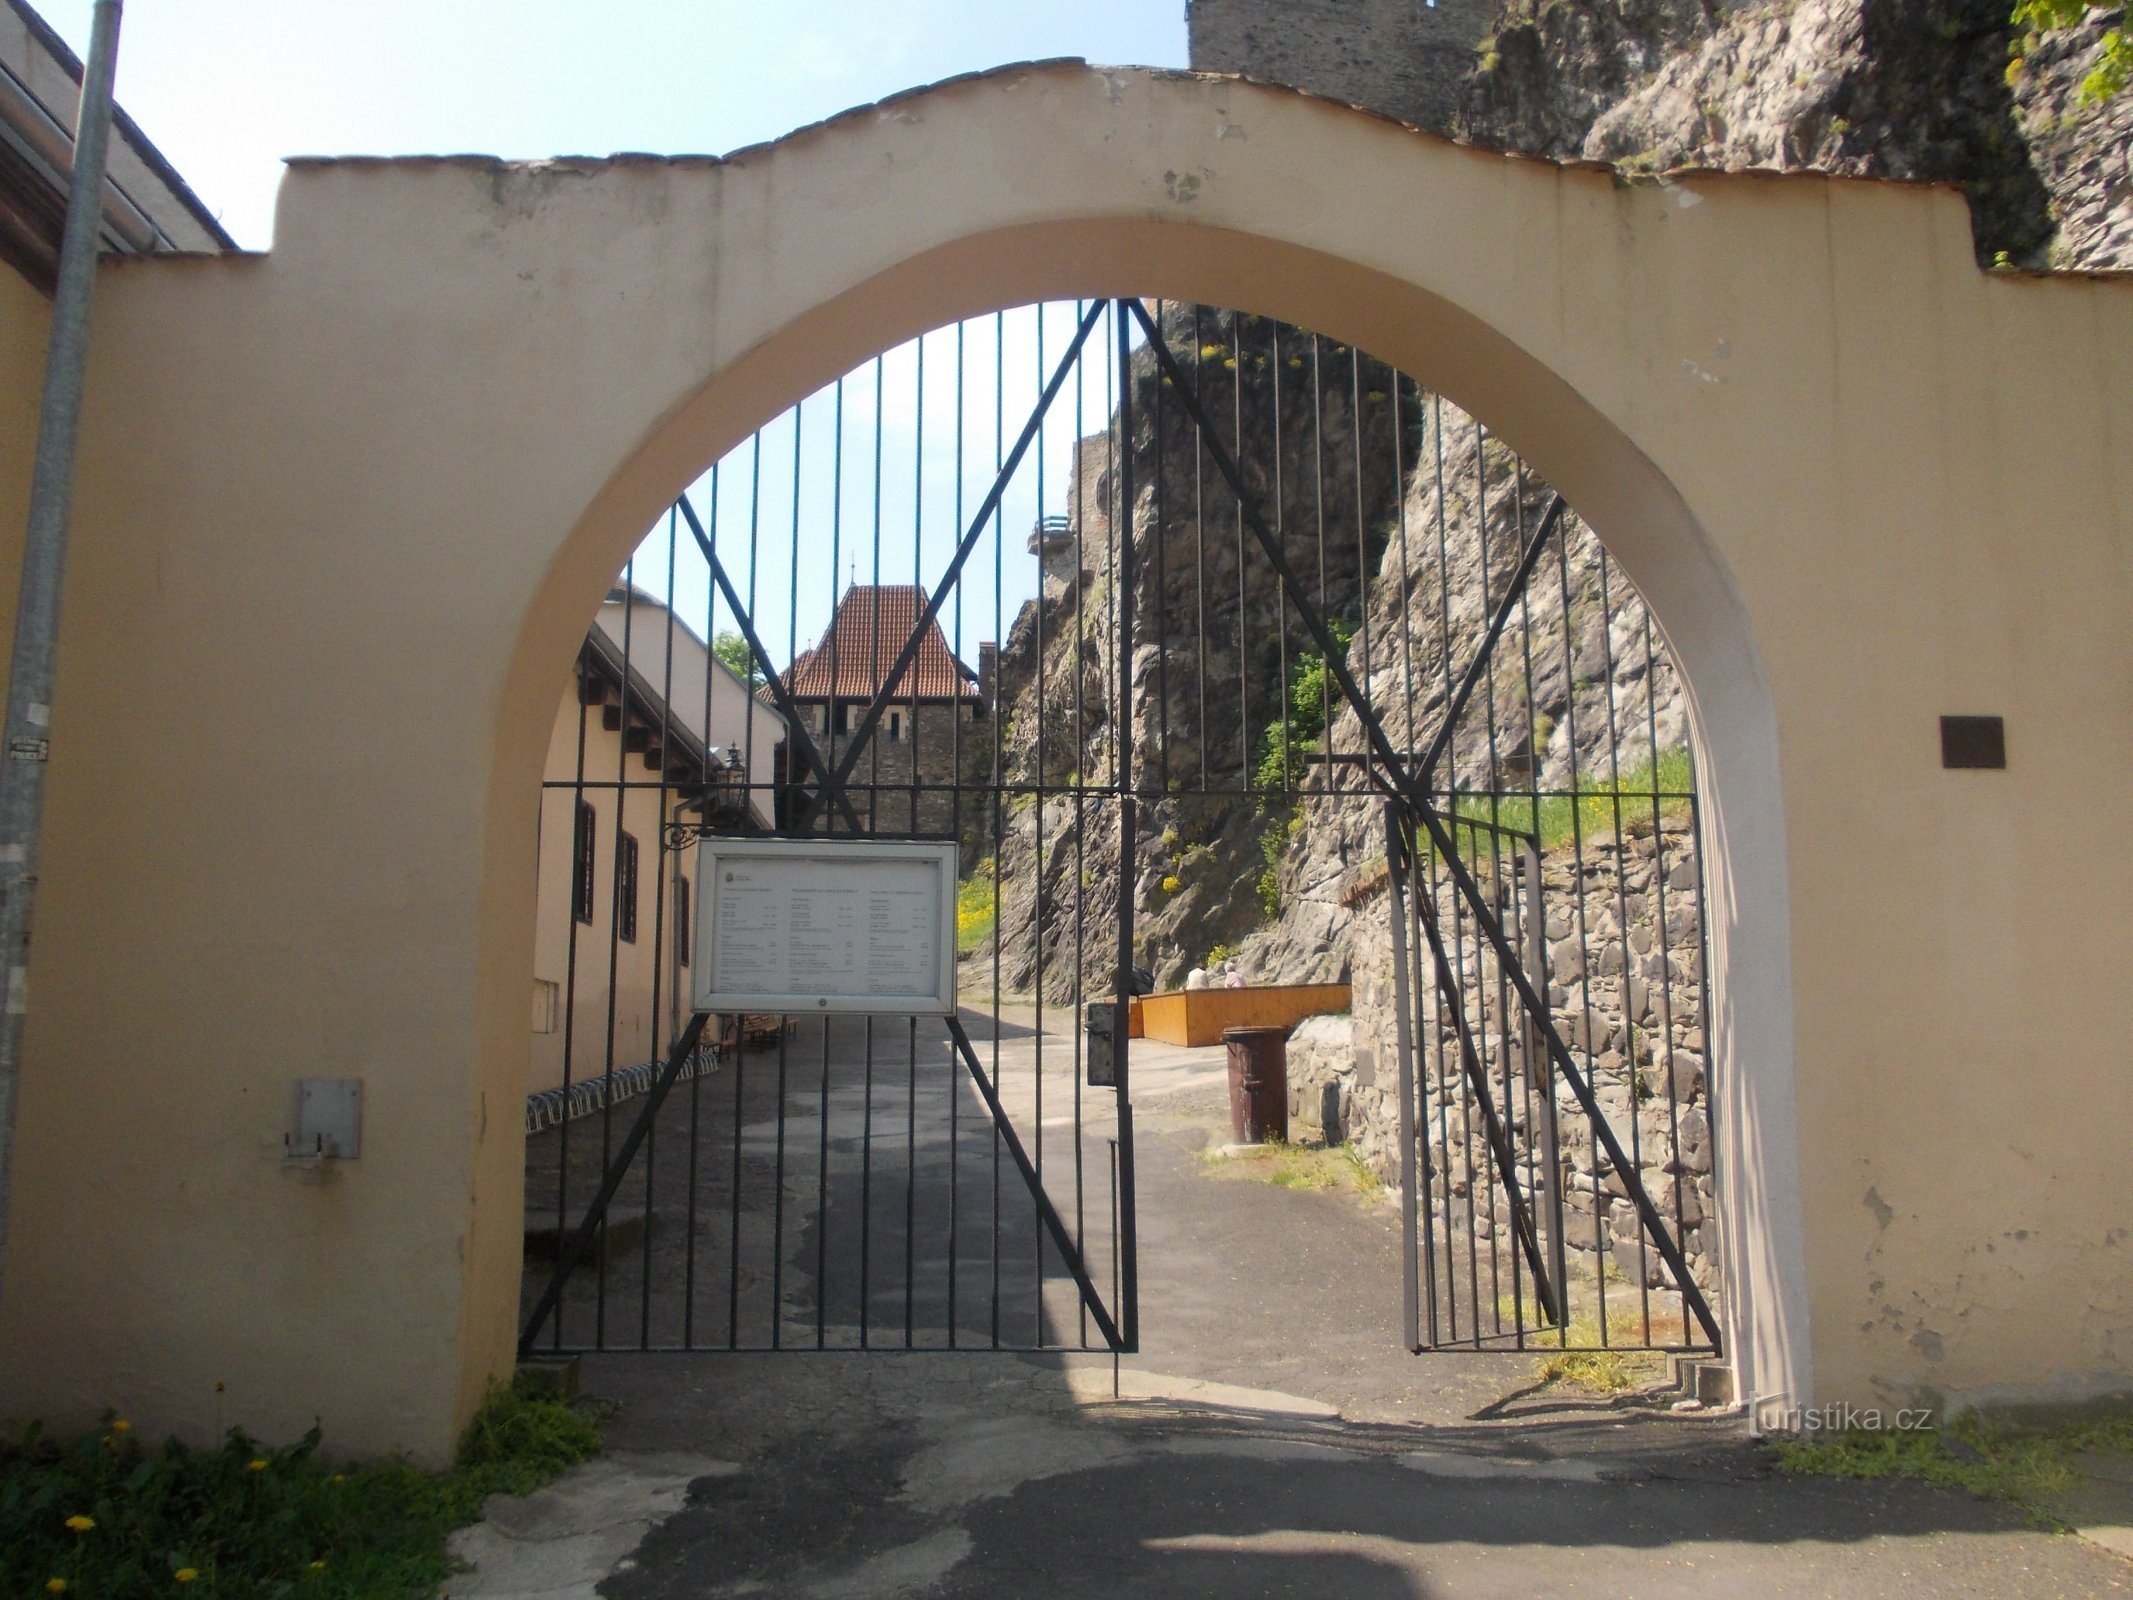 ворота на територію замку